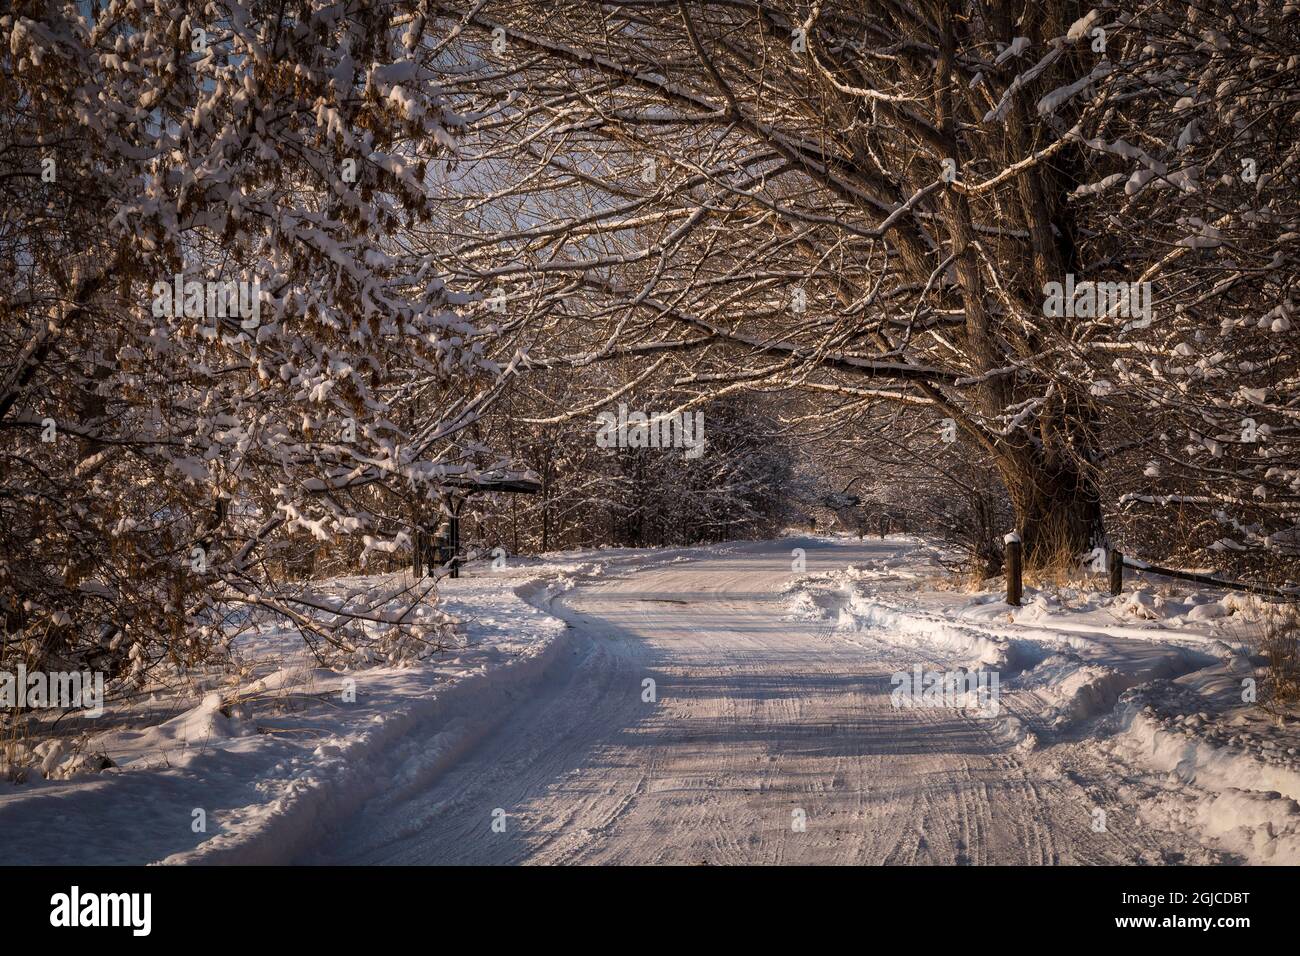 Colorado, Rist Canyon, road, winter scene Stock Photo